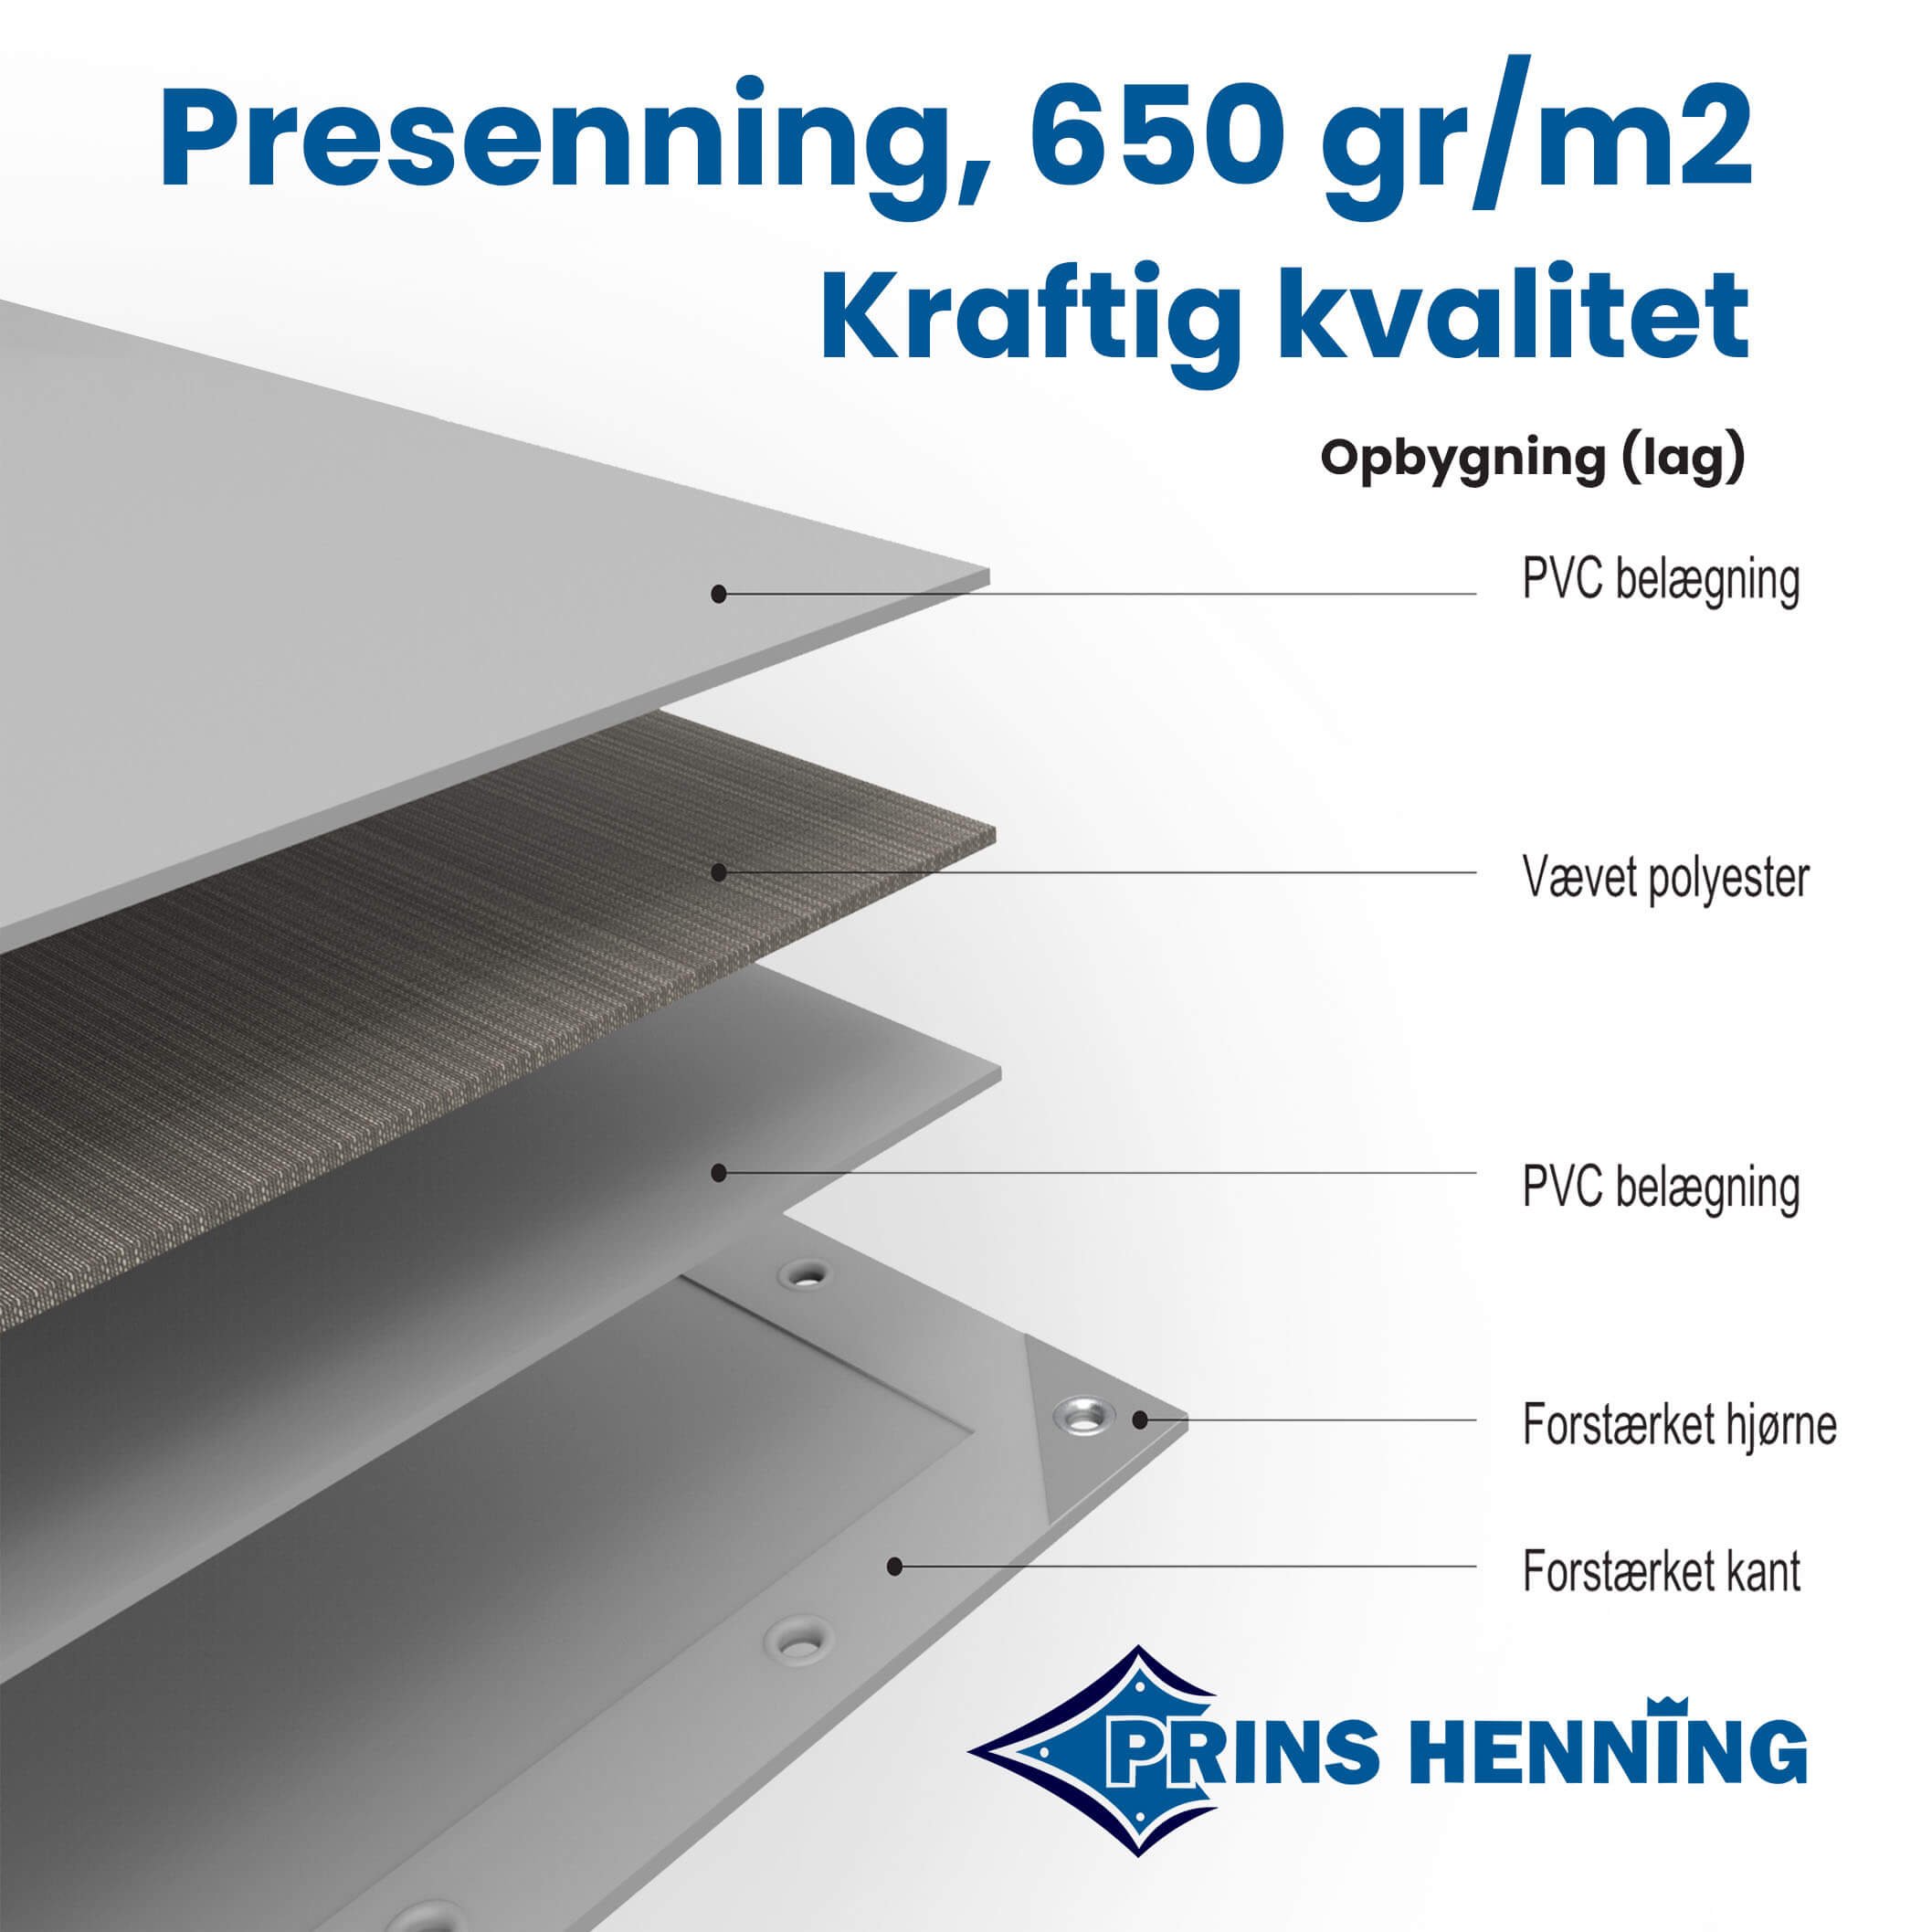 Professionel presenning, 4x4 meter, kraftig kvalitet, gr/m2 - Grønne presenninger - Prins Henning v/DKTEX ApS